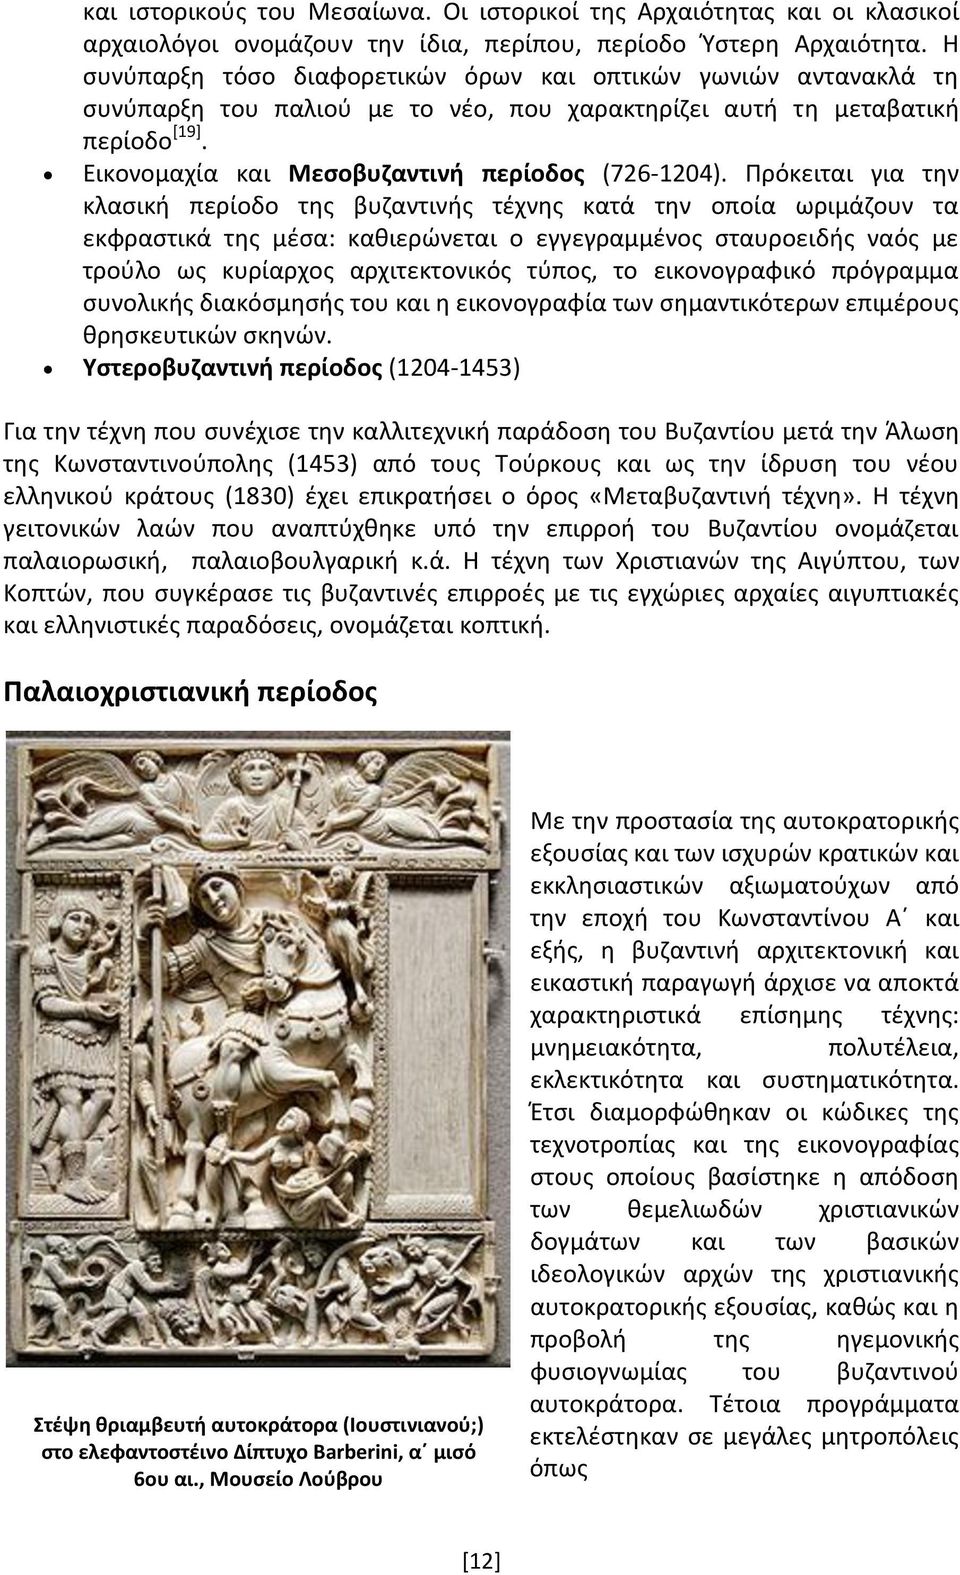 Πρόκειται για την κλασική περίοδο της βυζαντινής τέχνης κατά την οποία ωριμάζουν τα εκφραστικά της μέσα: καθιερώνεται ο εγγεγραμμένος σταυροειδής ναός με τρούλο ως κυρίαρχος αρχιτεκτονικός τύπος, το